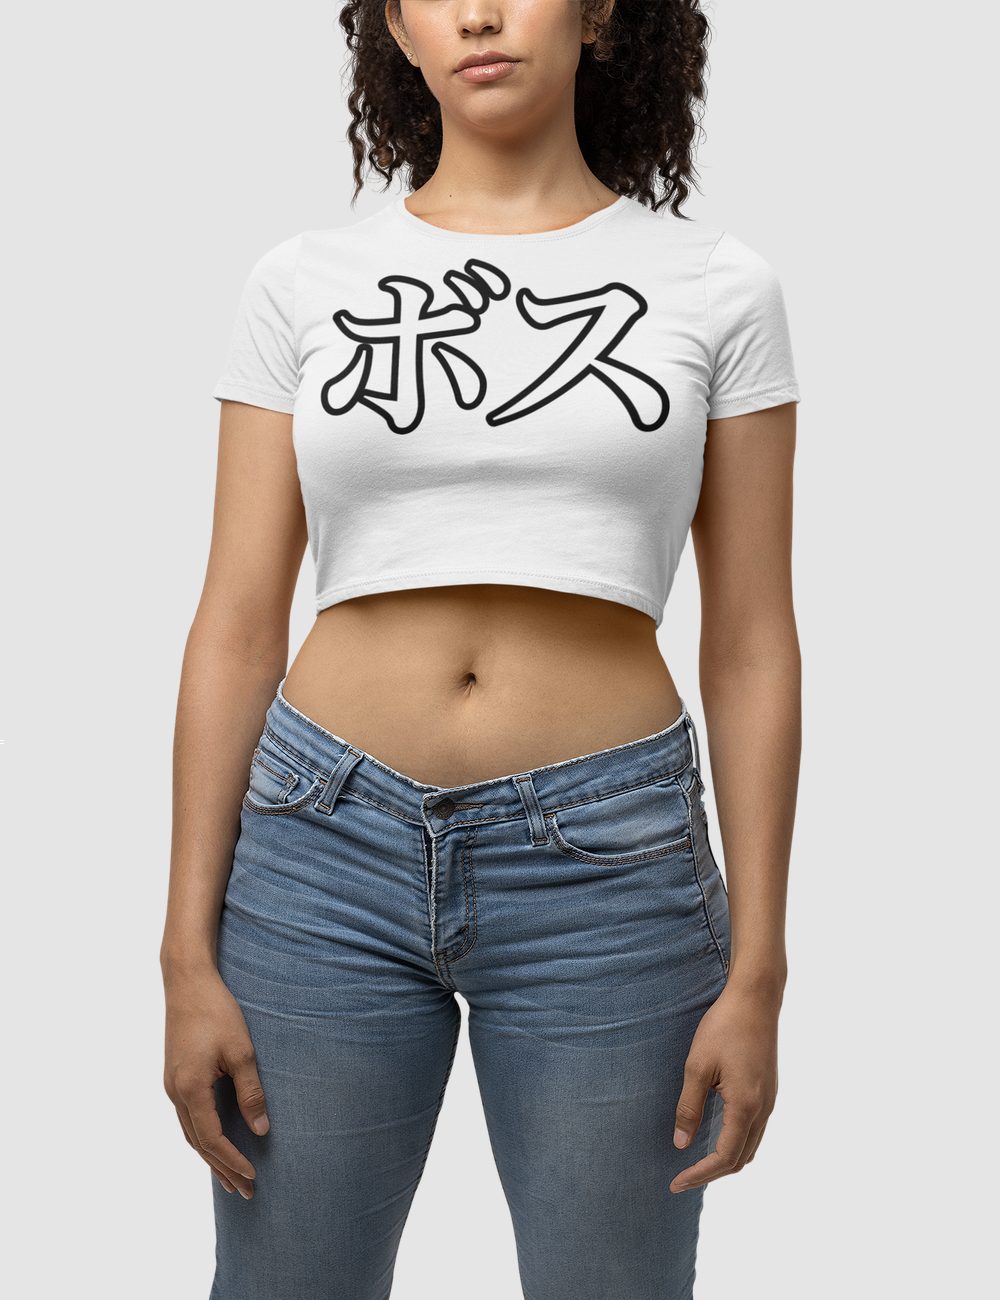 Boss Kanji Women's Fitted Crop Top T-Shirt OniTakai